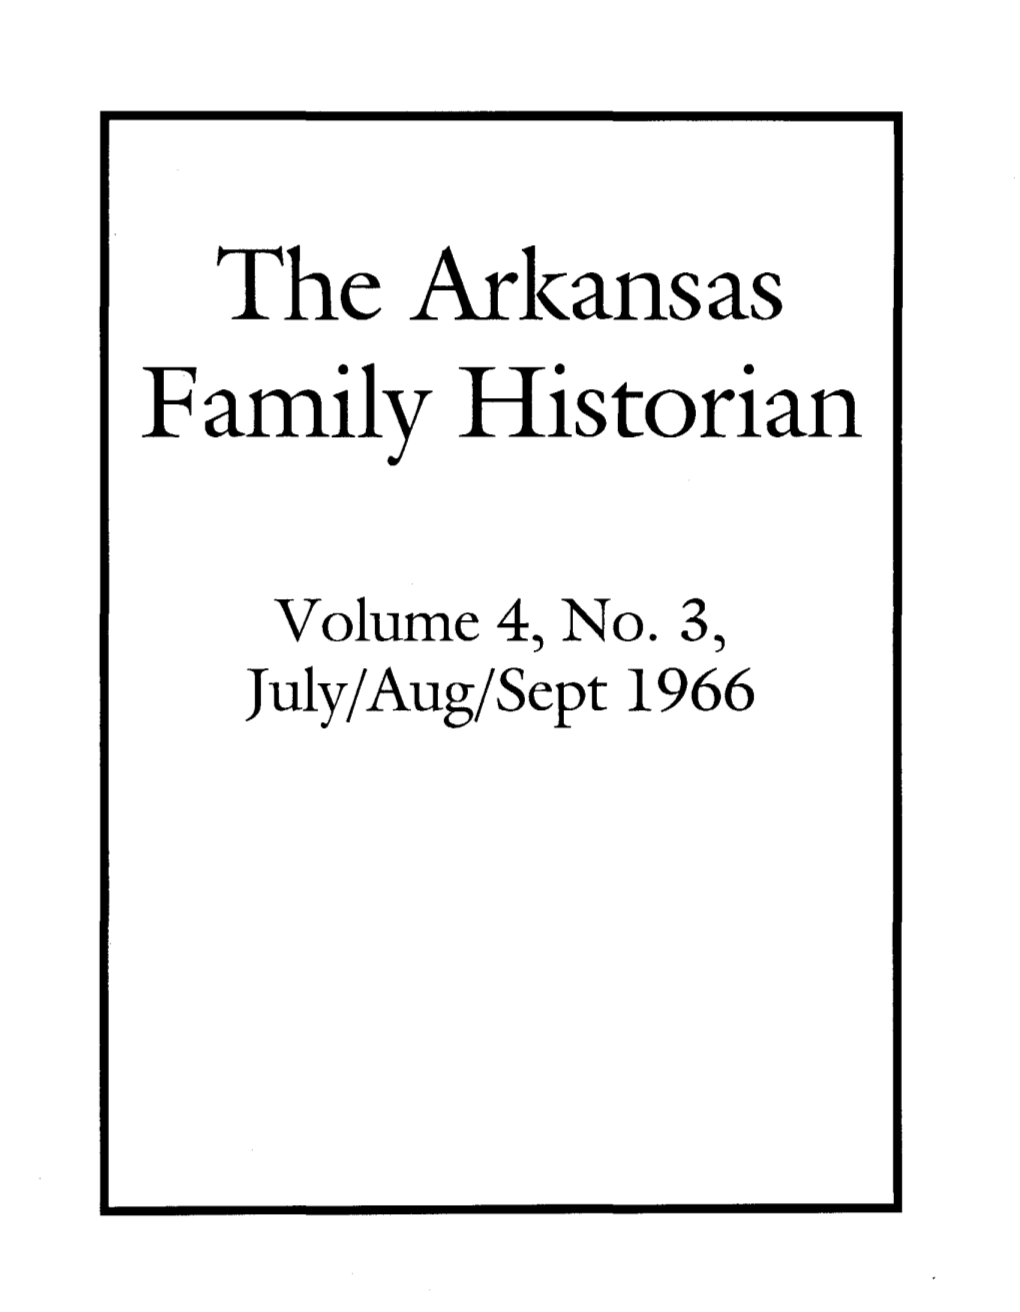 The Arl(Ansas Family Historian